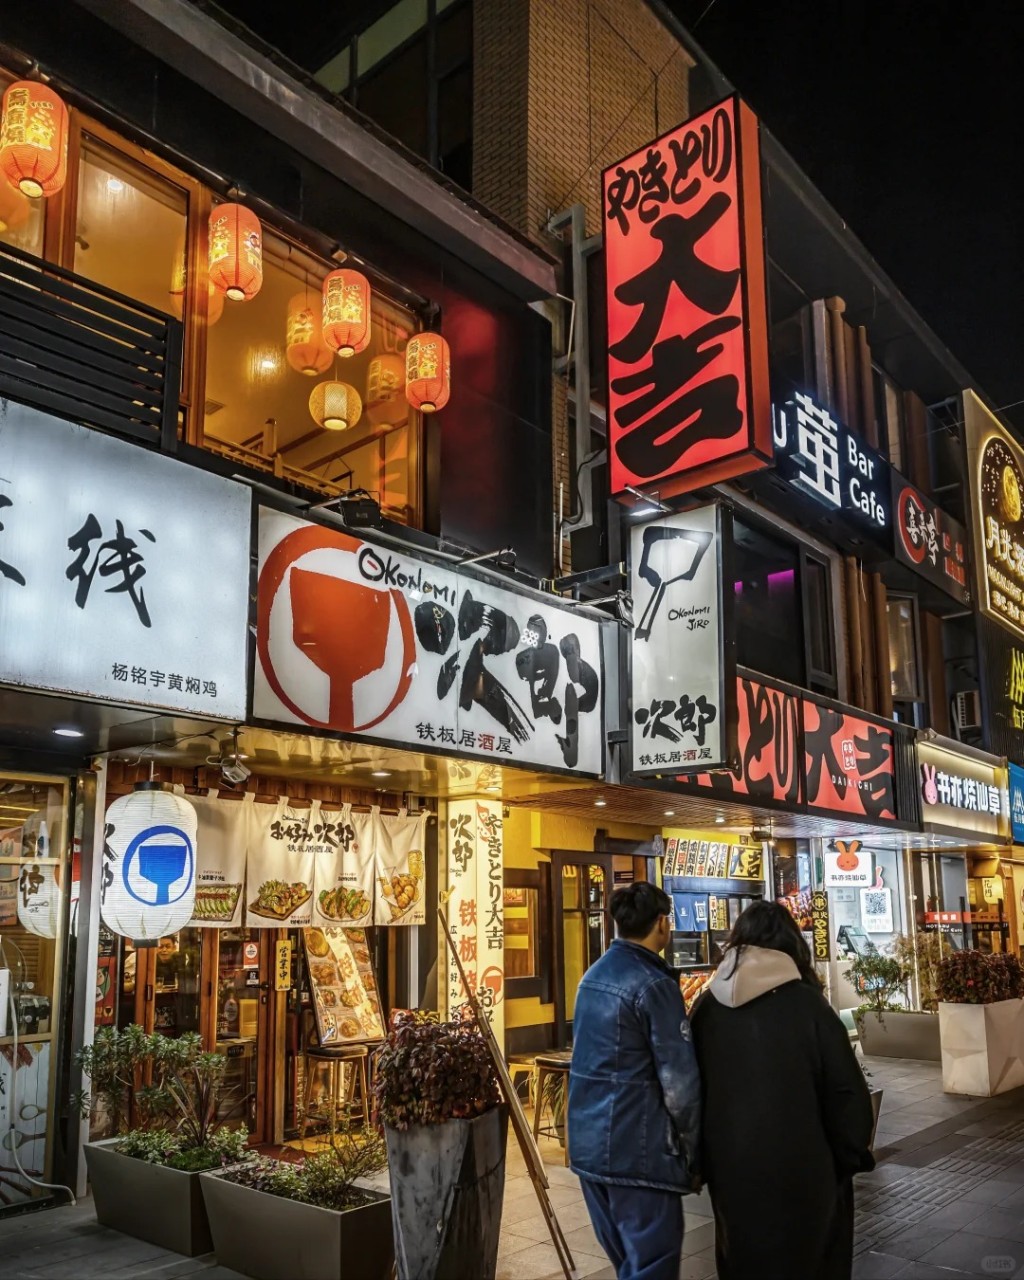 蘇州淮海街是當地知名的日本文化街。小紅書